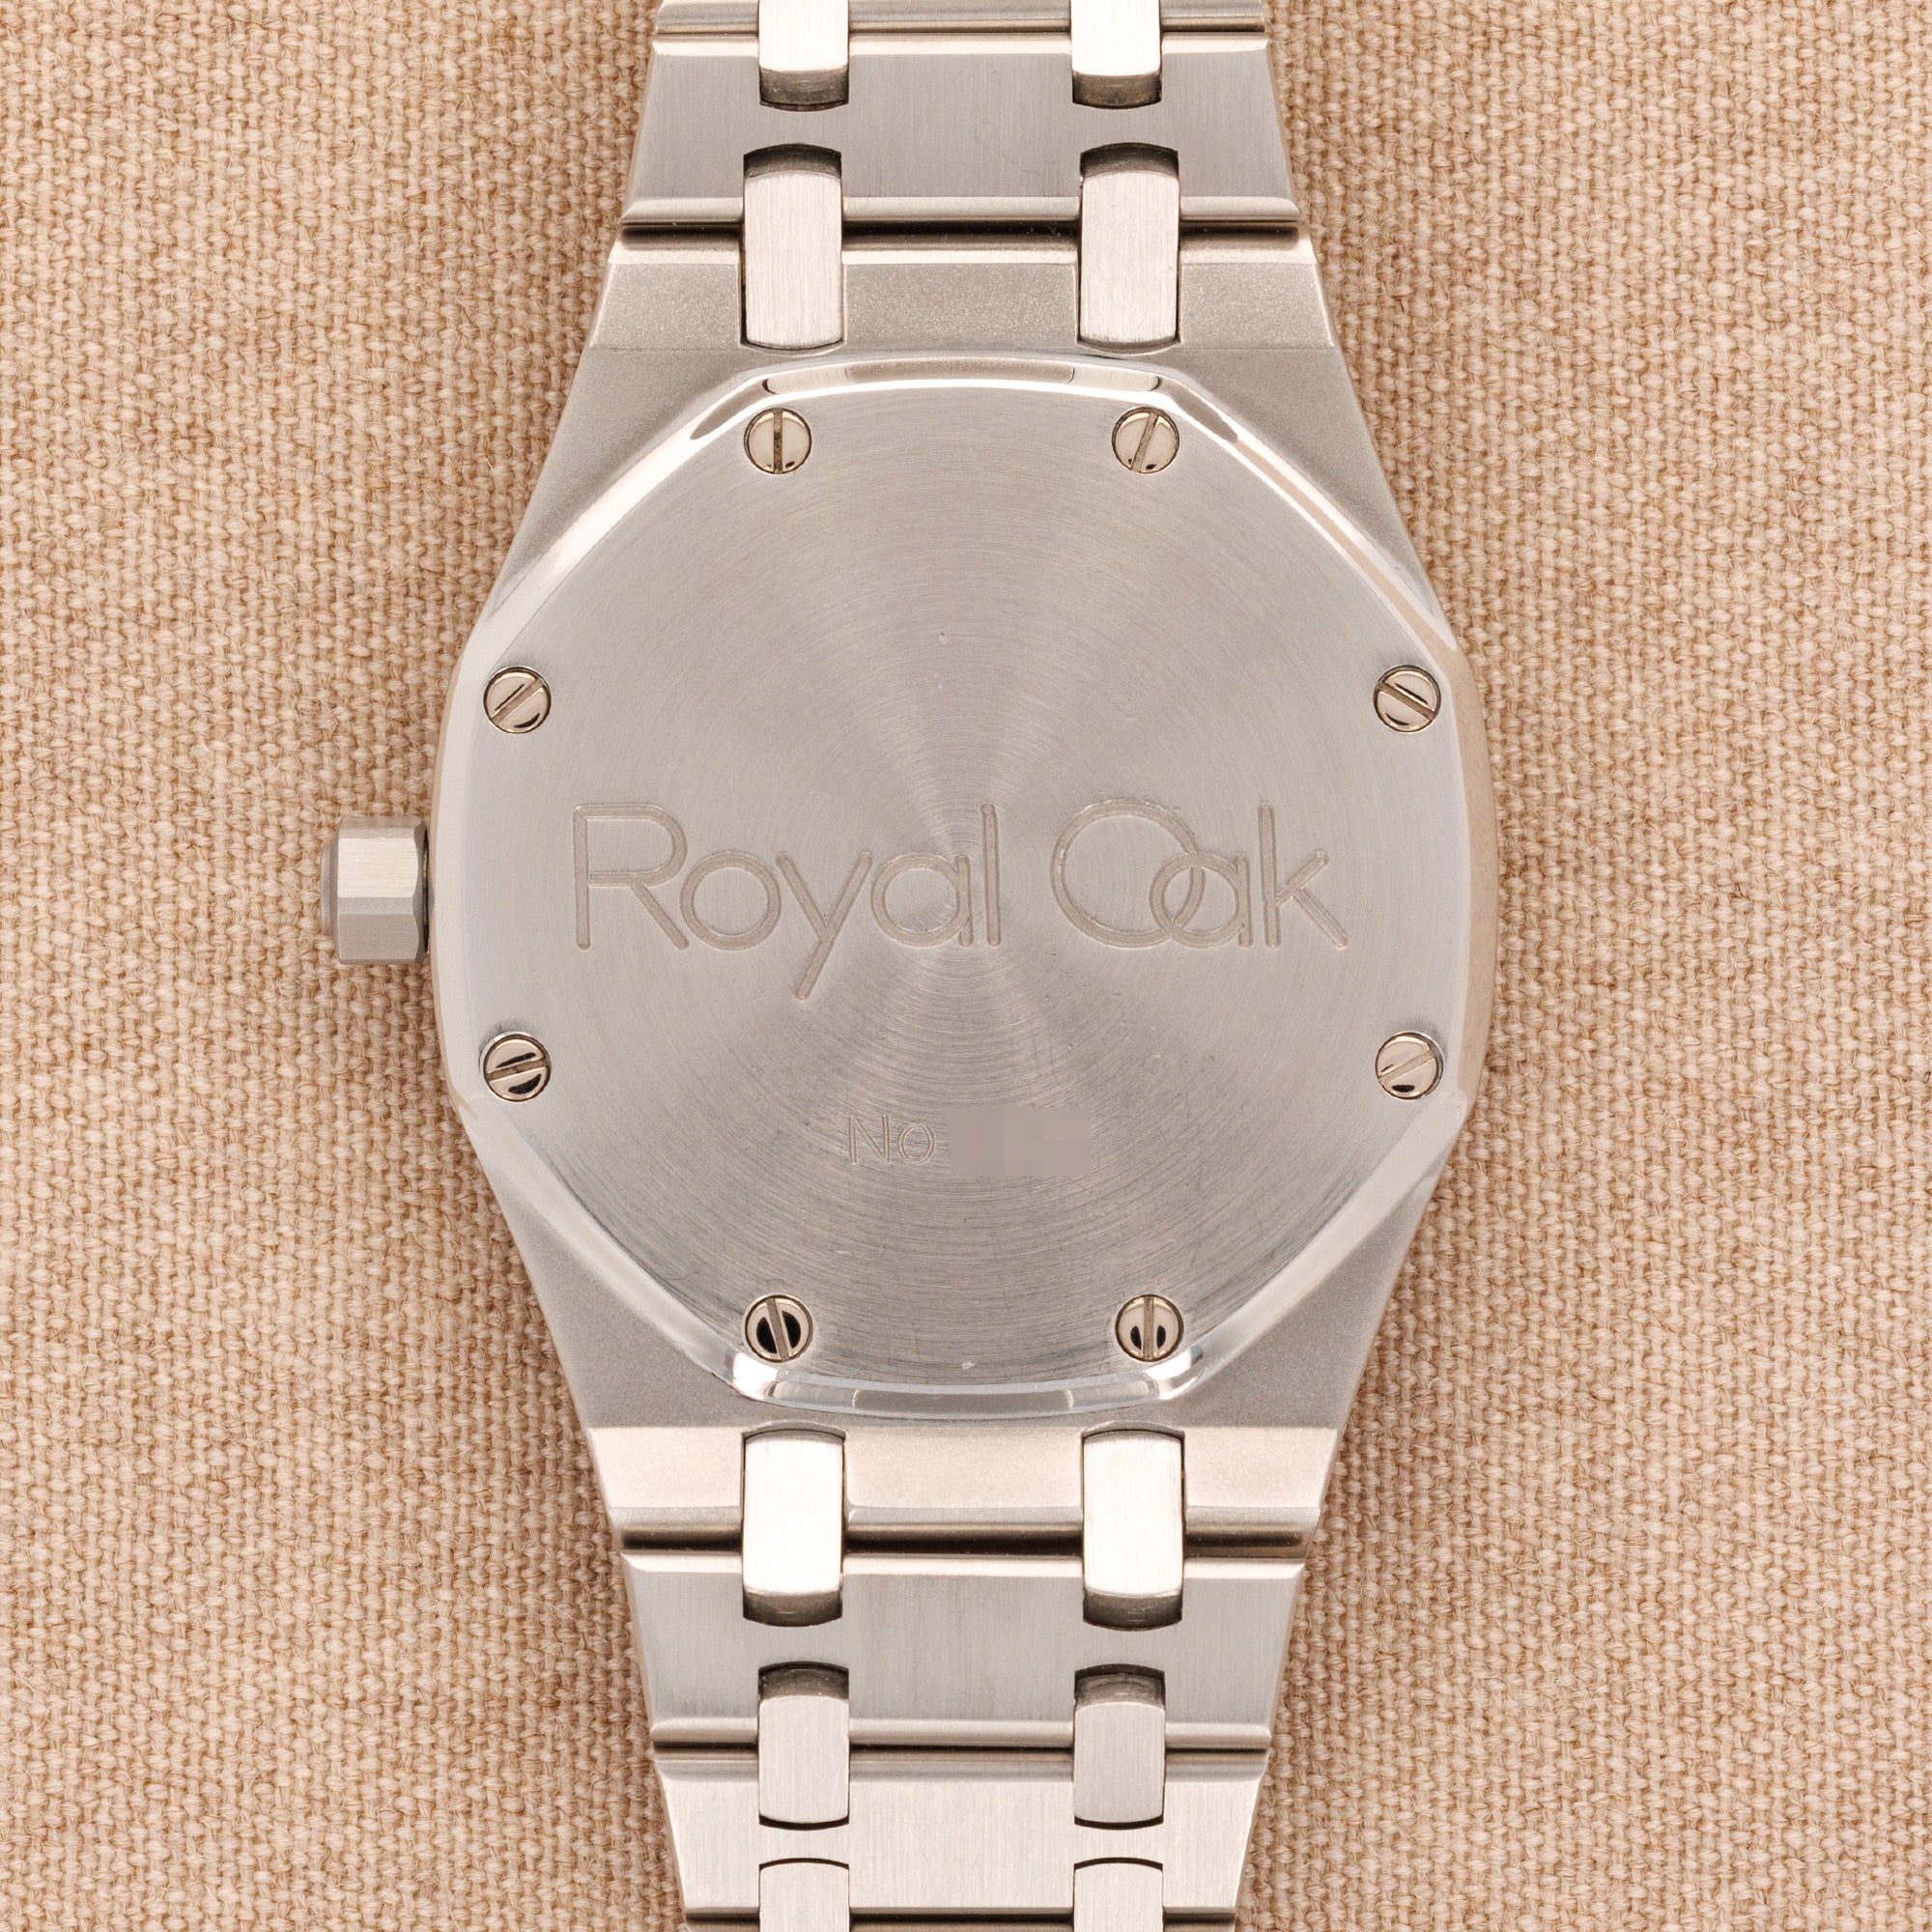 Audemars Piguet - Audemars Piguet Steel Royal Oak Ref. 14700 - The Keystone Watches